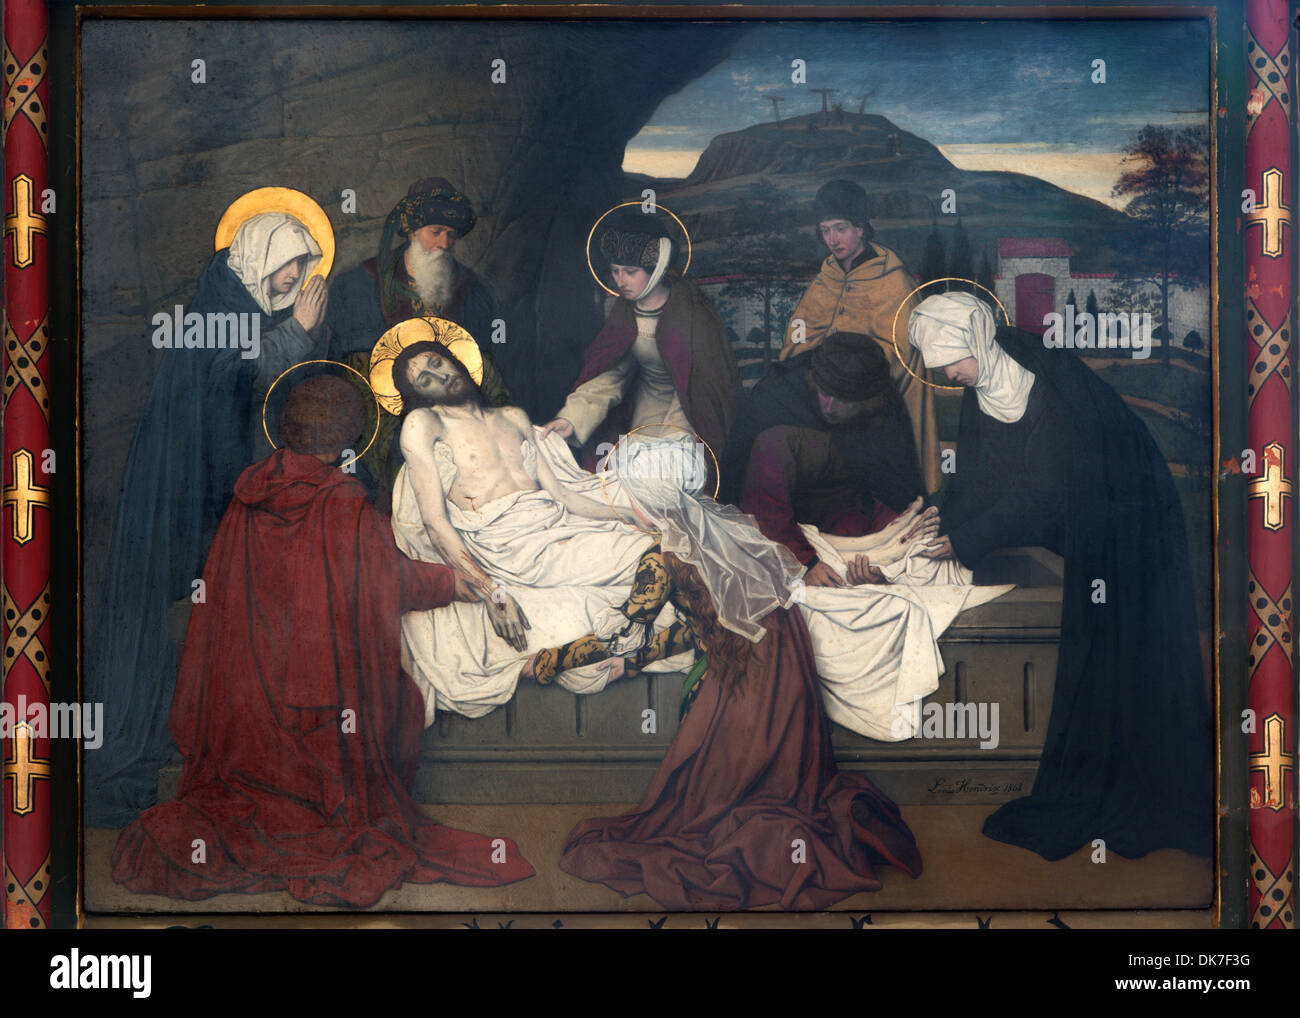 Anversa, Belgio - 5 settembre: affresco - la sepoltura di Gesù da Josef Janssens dagli anni 1903 - 1910 nella cattedrale di Nostra Signora Foto Stock